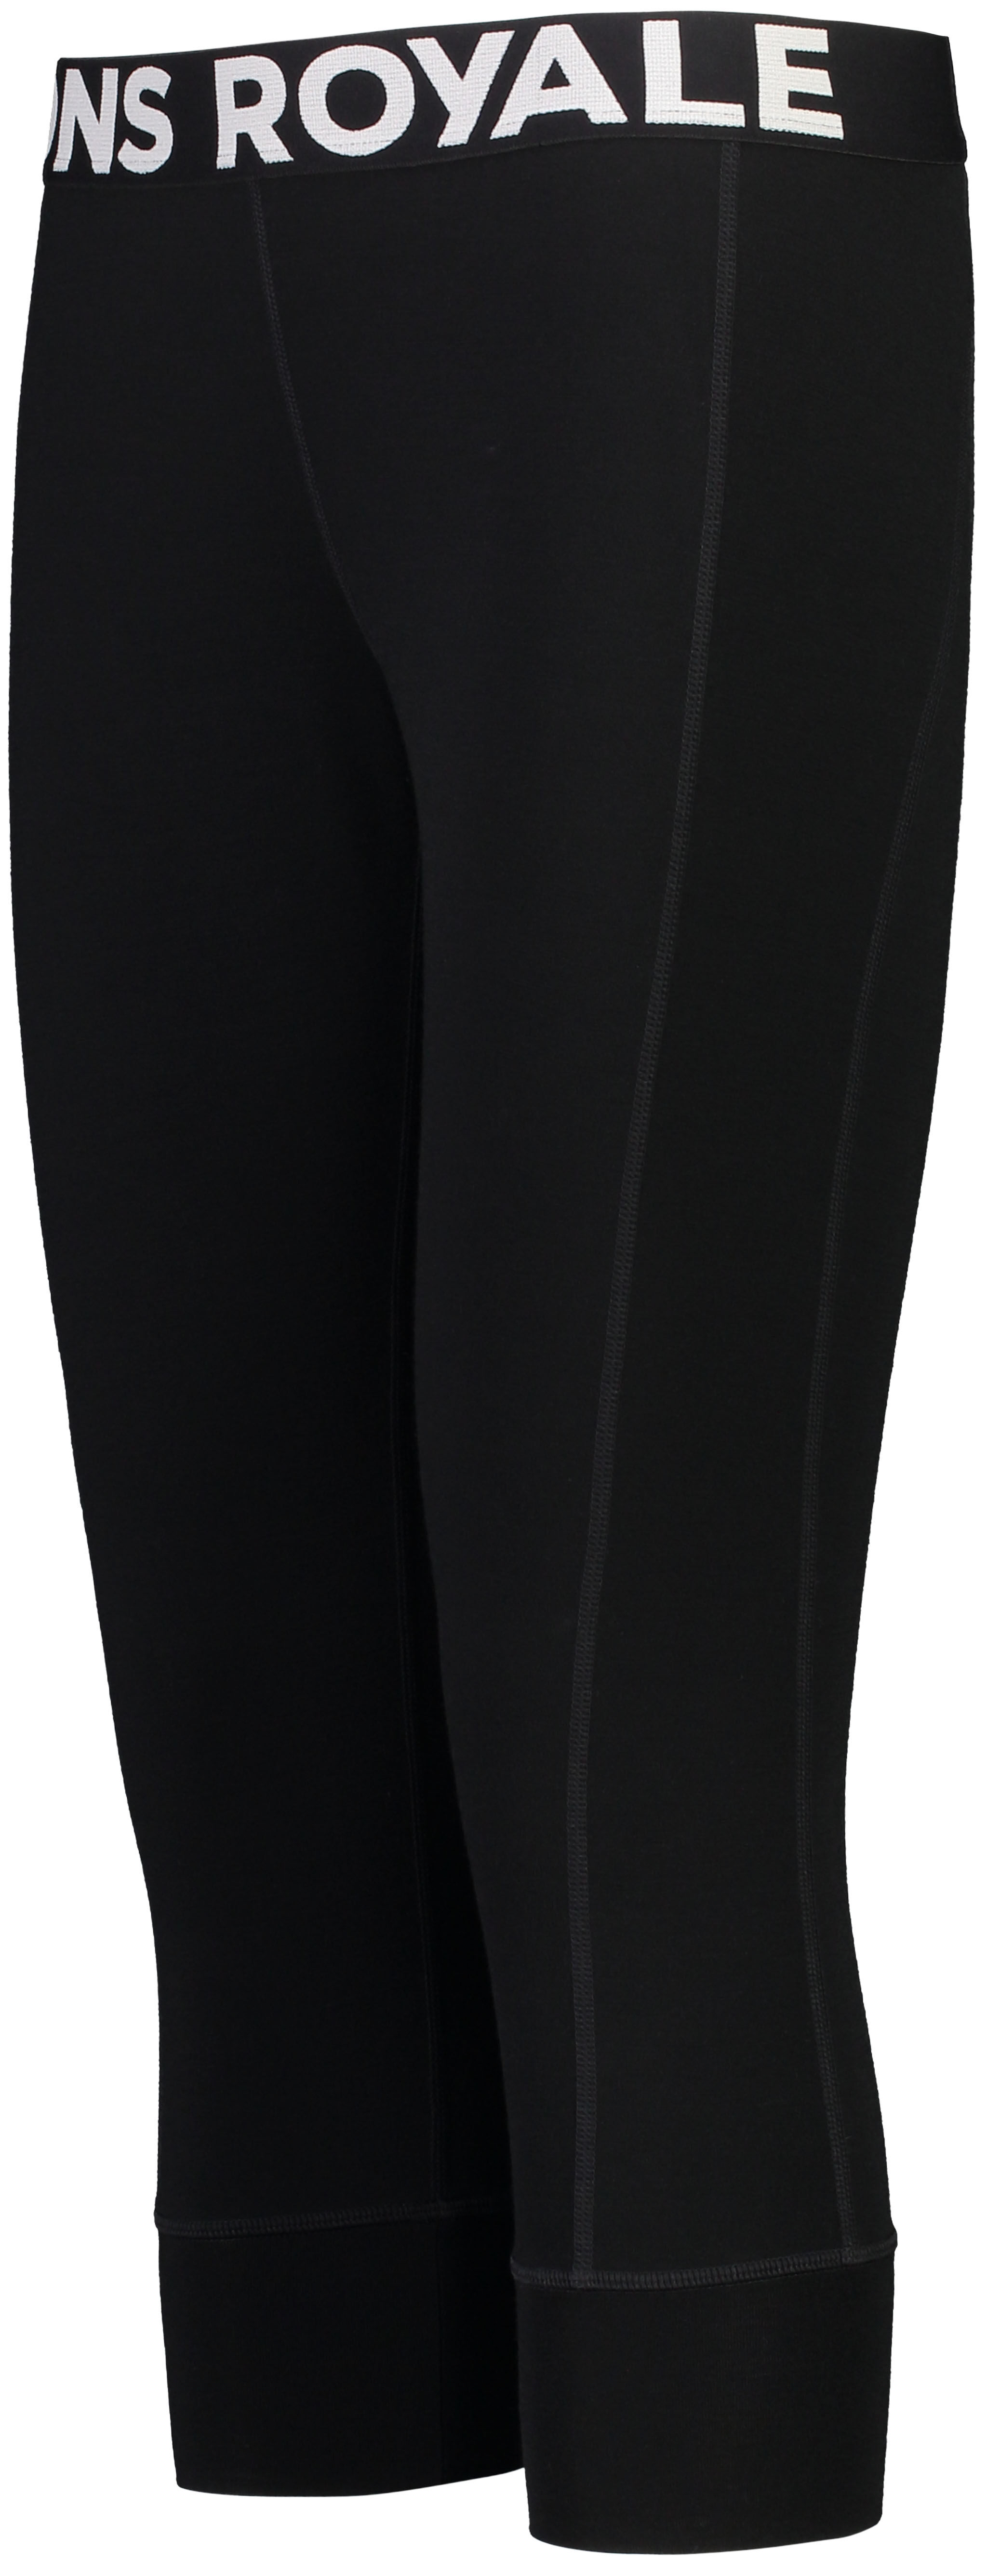 MONS ROYALE CASCADE MERINO FLEX 200 3/4 LEGGING BLACK S